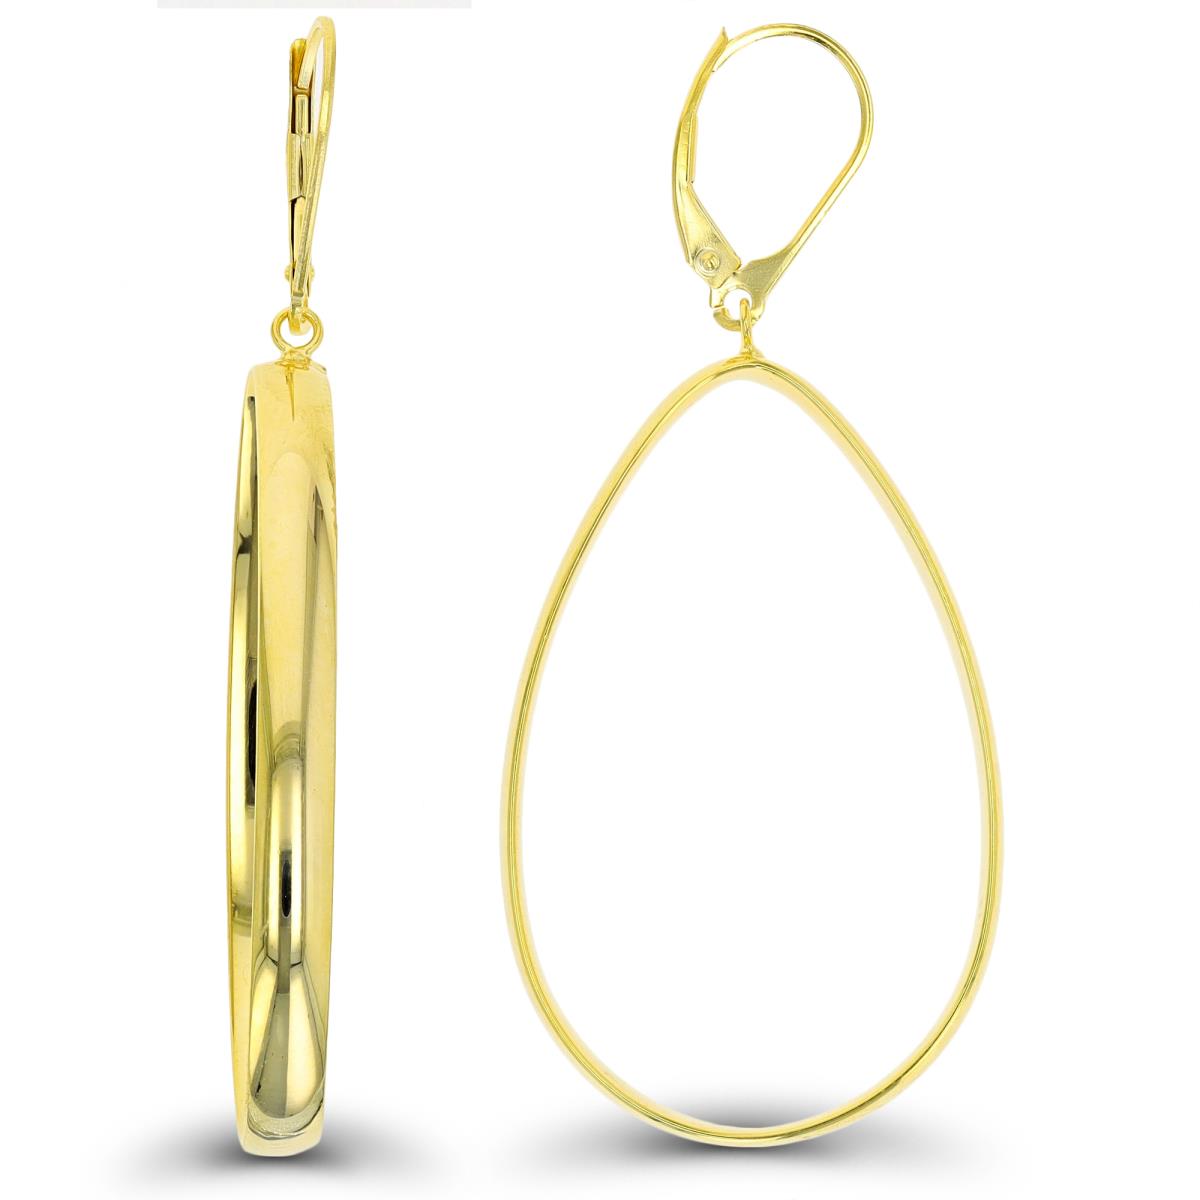 10K Yellow Gold Dangling Open Teardrop Leverback Earring